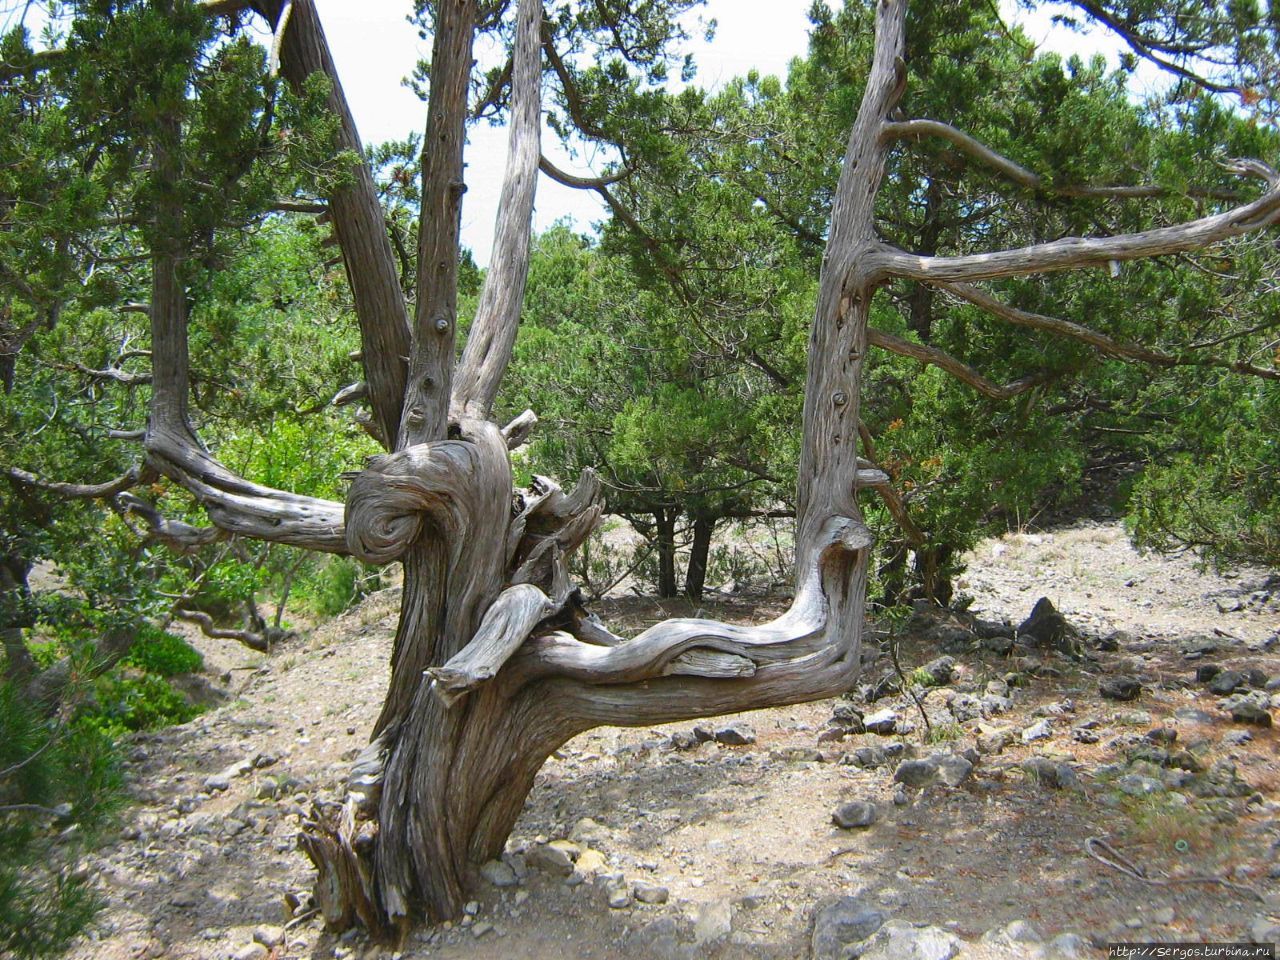 безжалостный ветер скрутил дерево, как уборщица мокрую половую тряпку Республика Крым, Россия